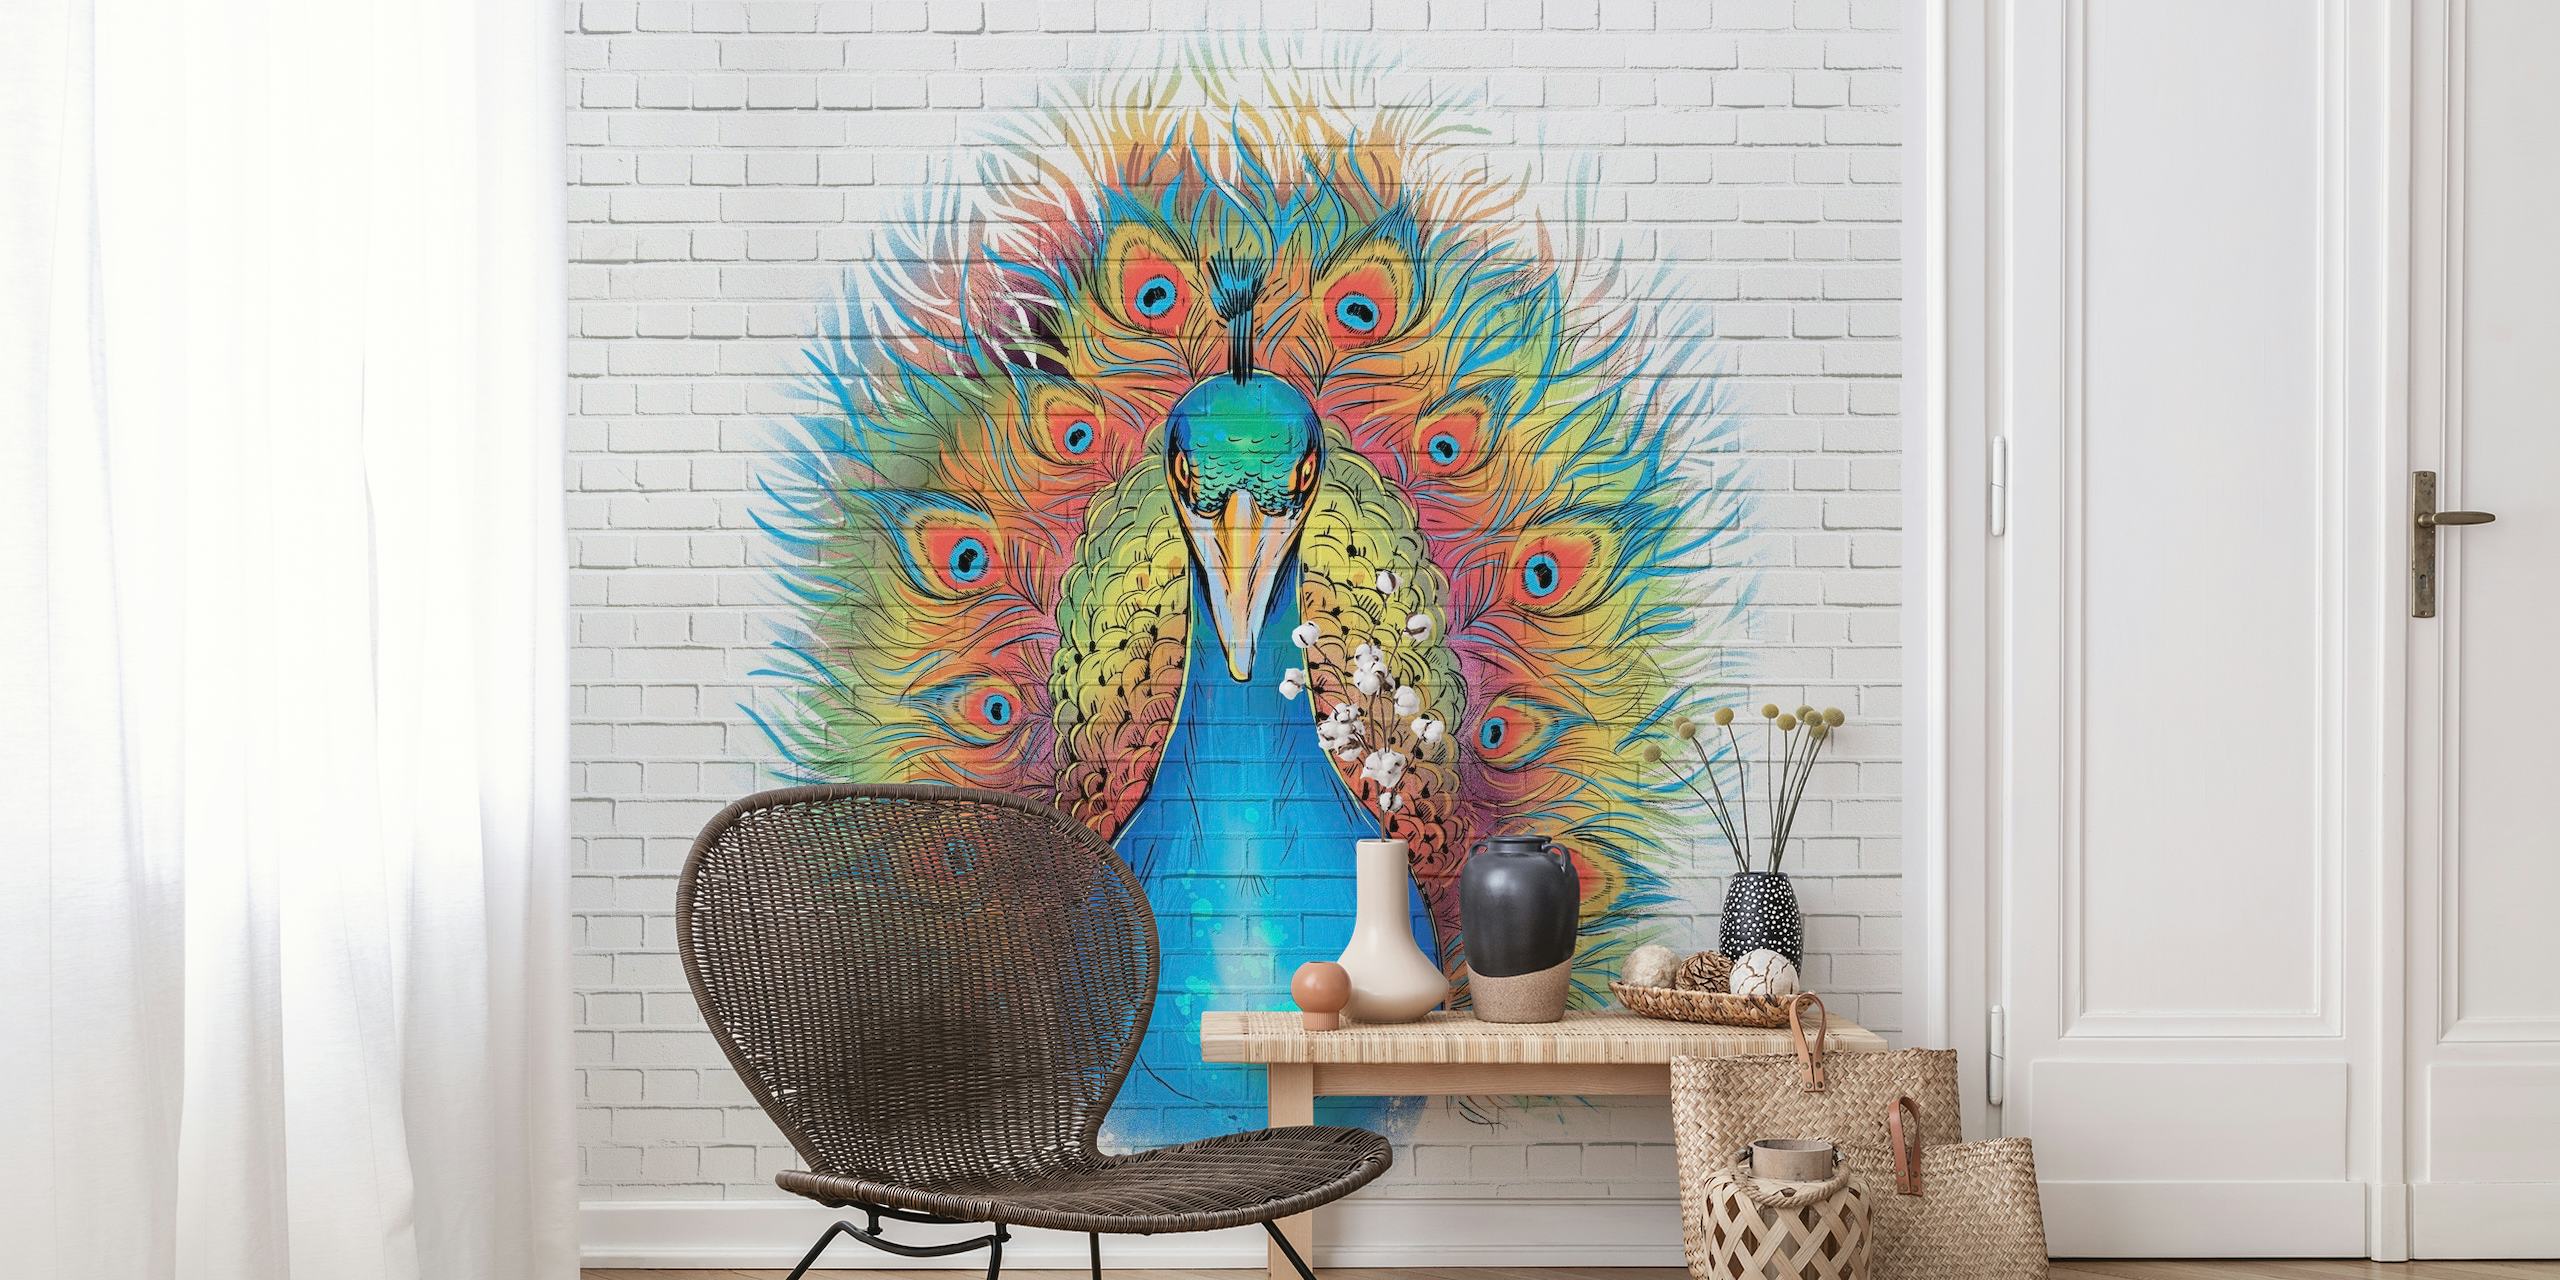 Murale Angry Peacock Graffiti ispirato alla street art con colori vivaci su uno sfondo di mattoni bianchi